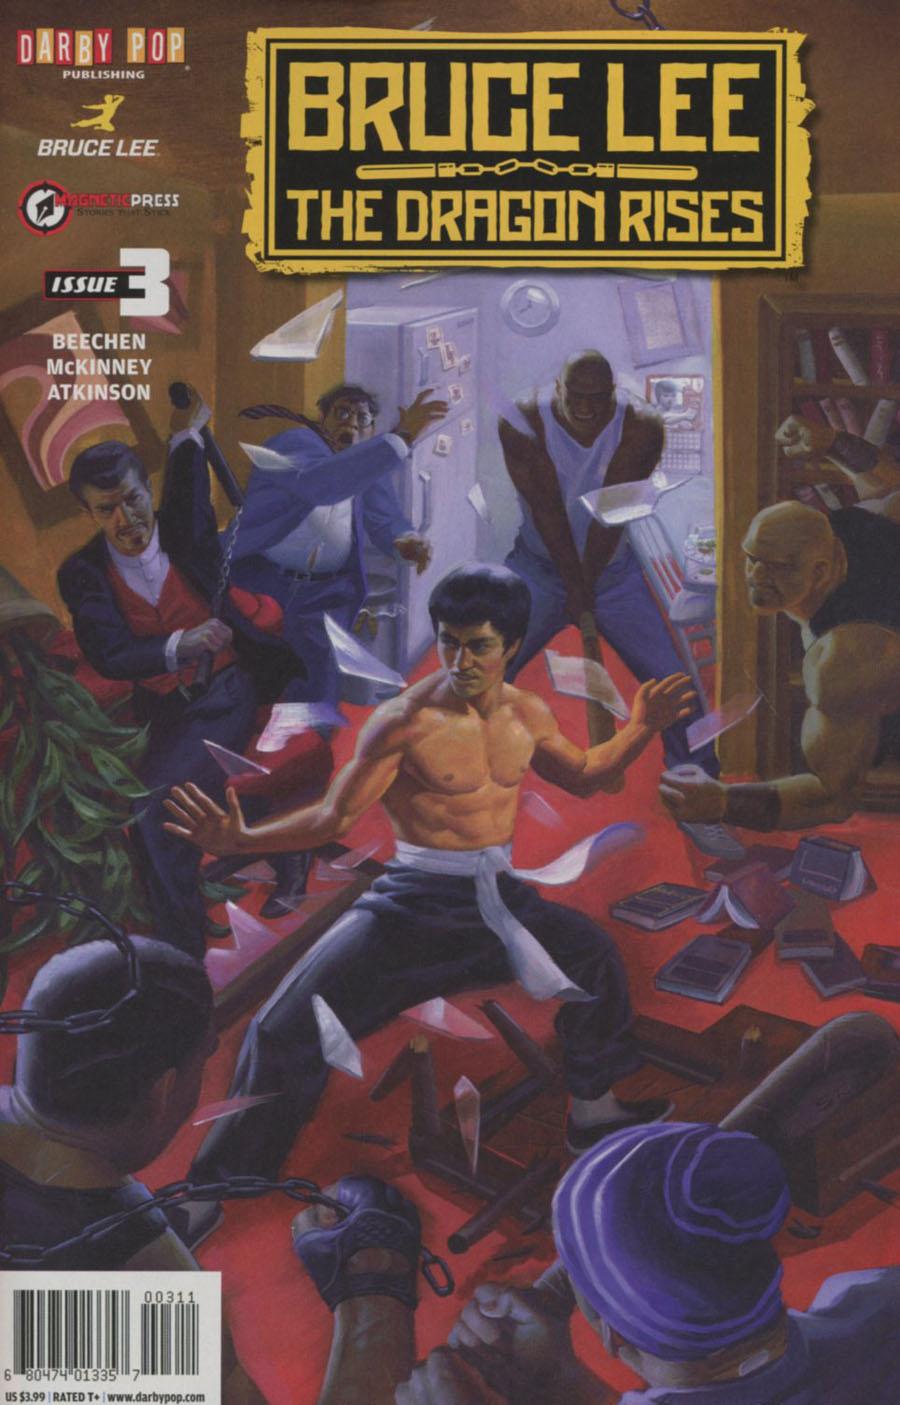 Bruce Lee Dragon Rises Vol. 1 #3